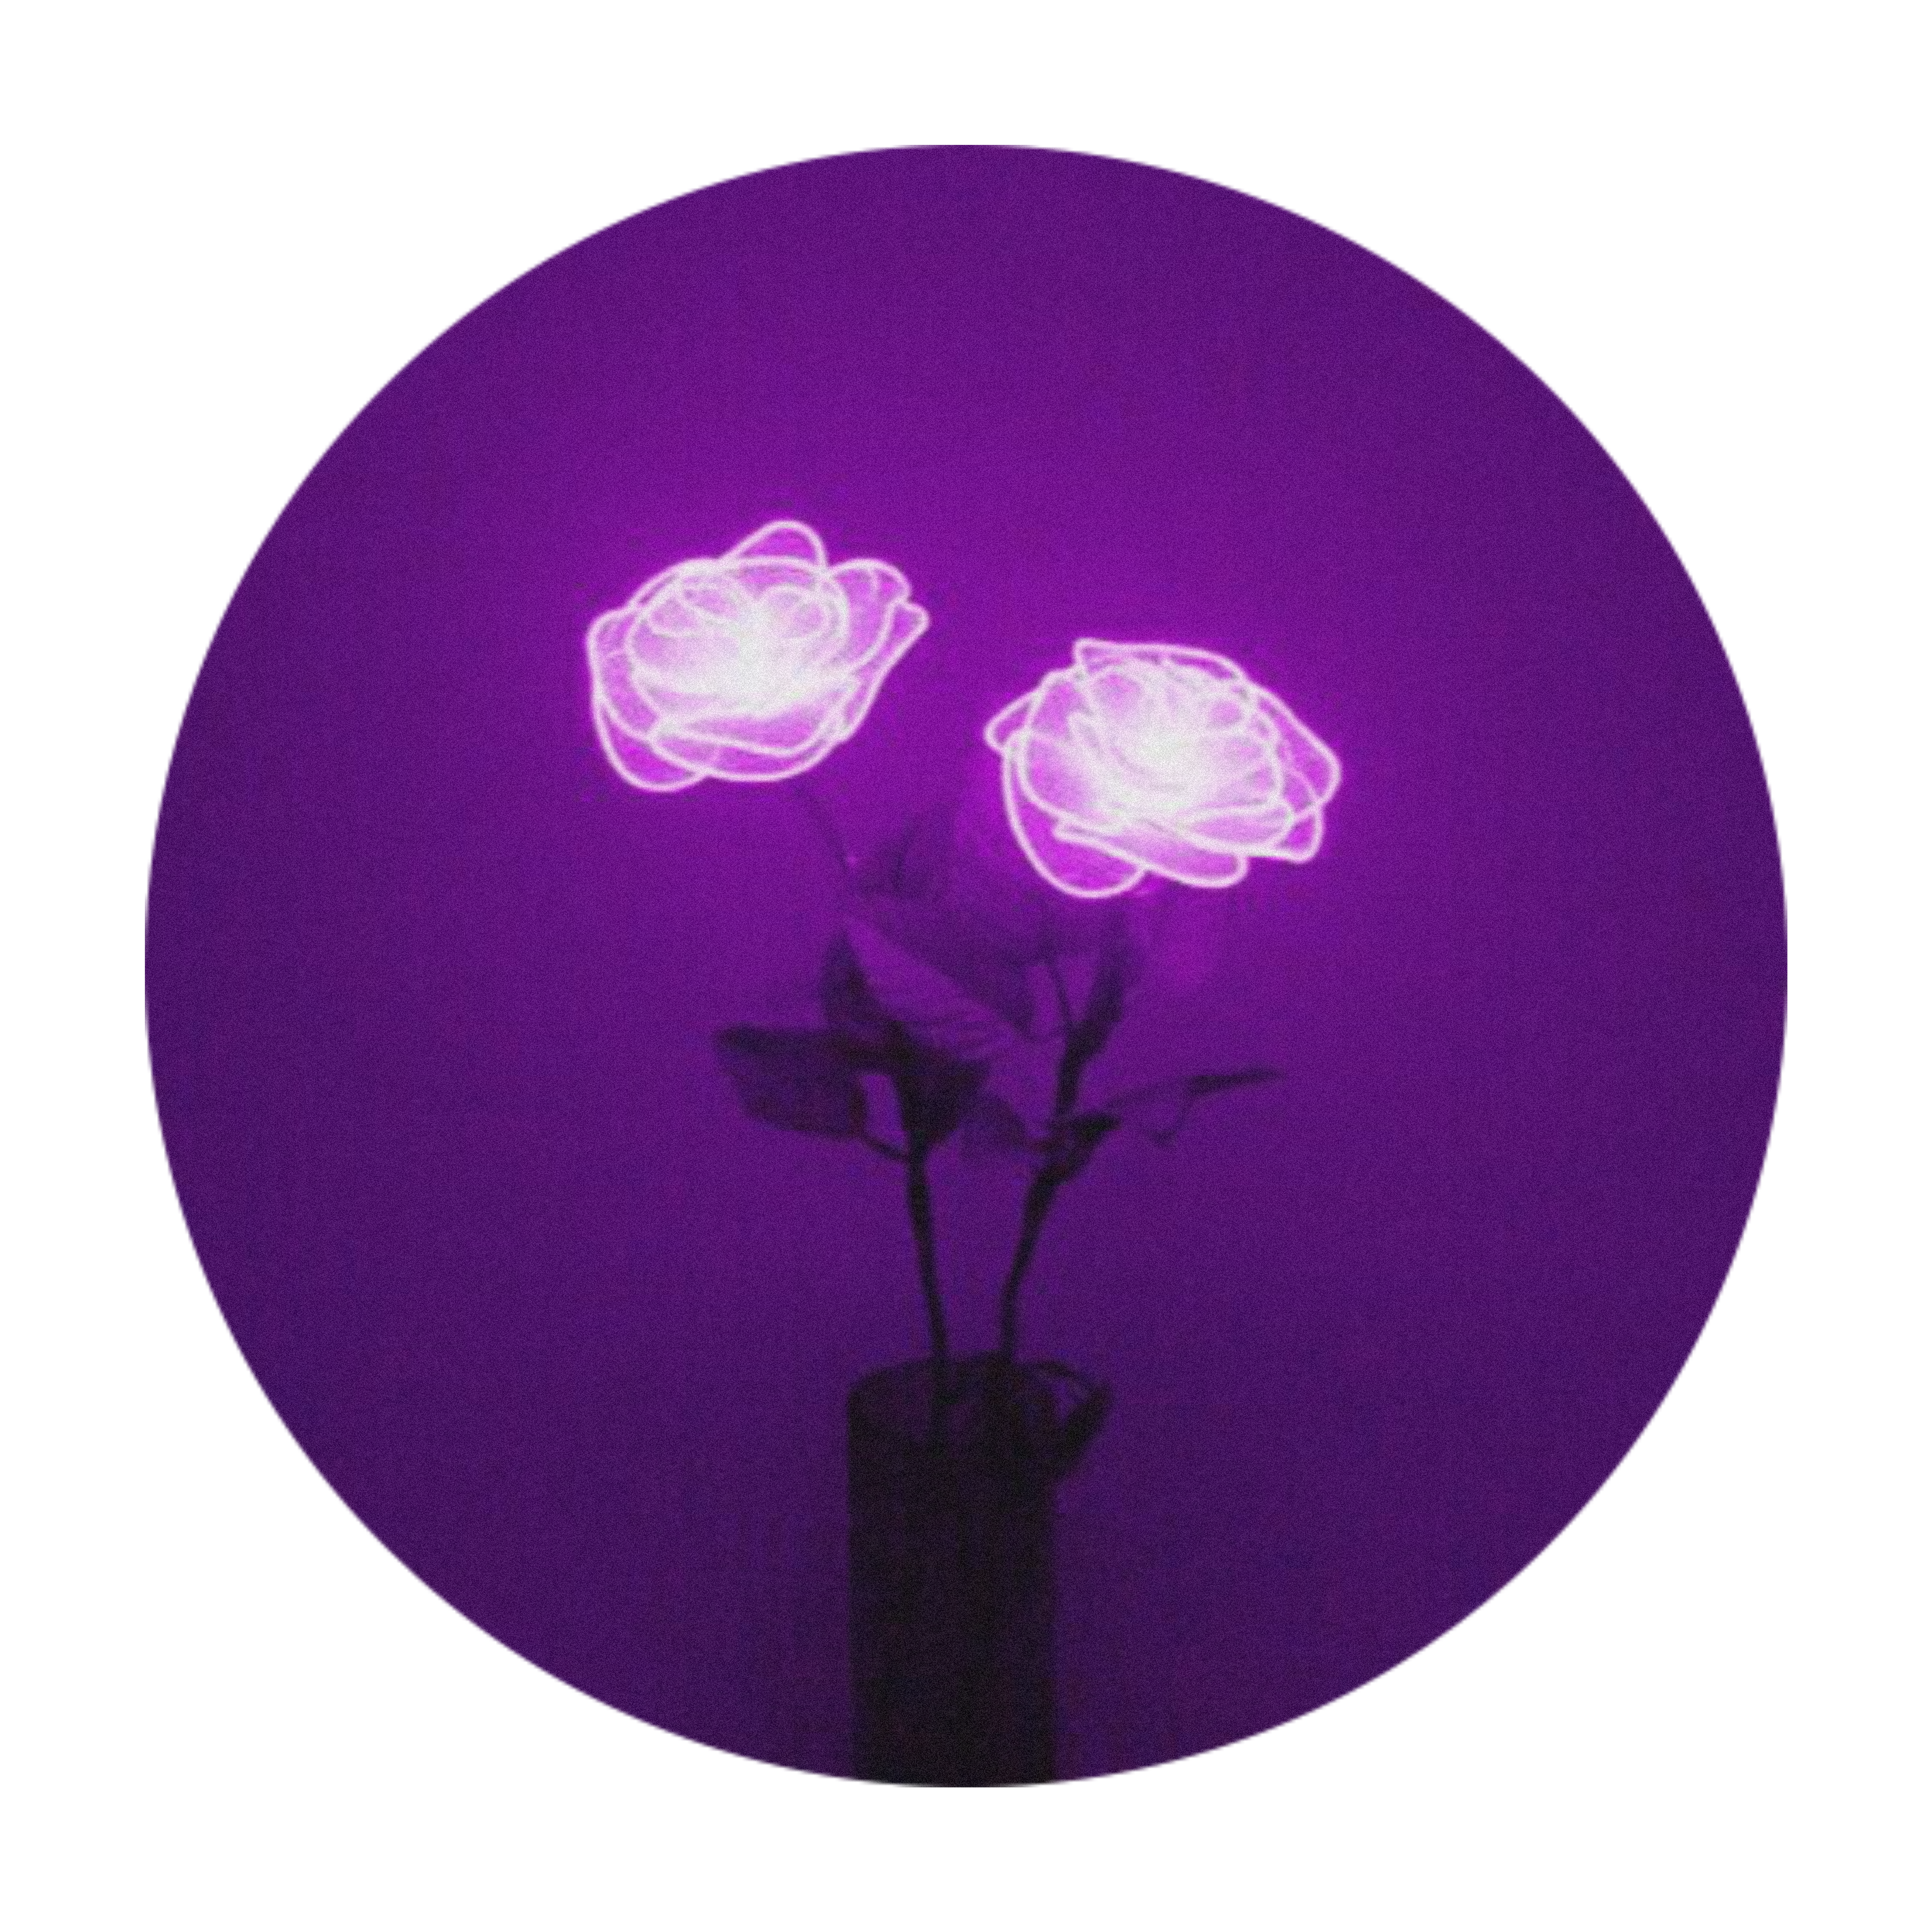 lights rose purple flower aesthetic sticker by @zukkos_wifey.